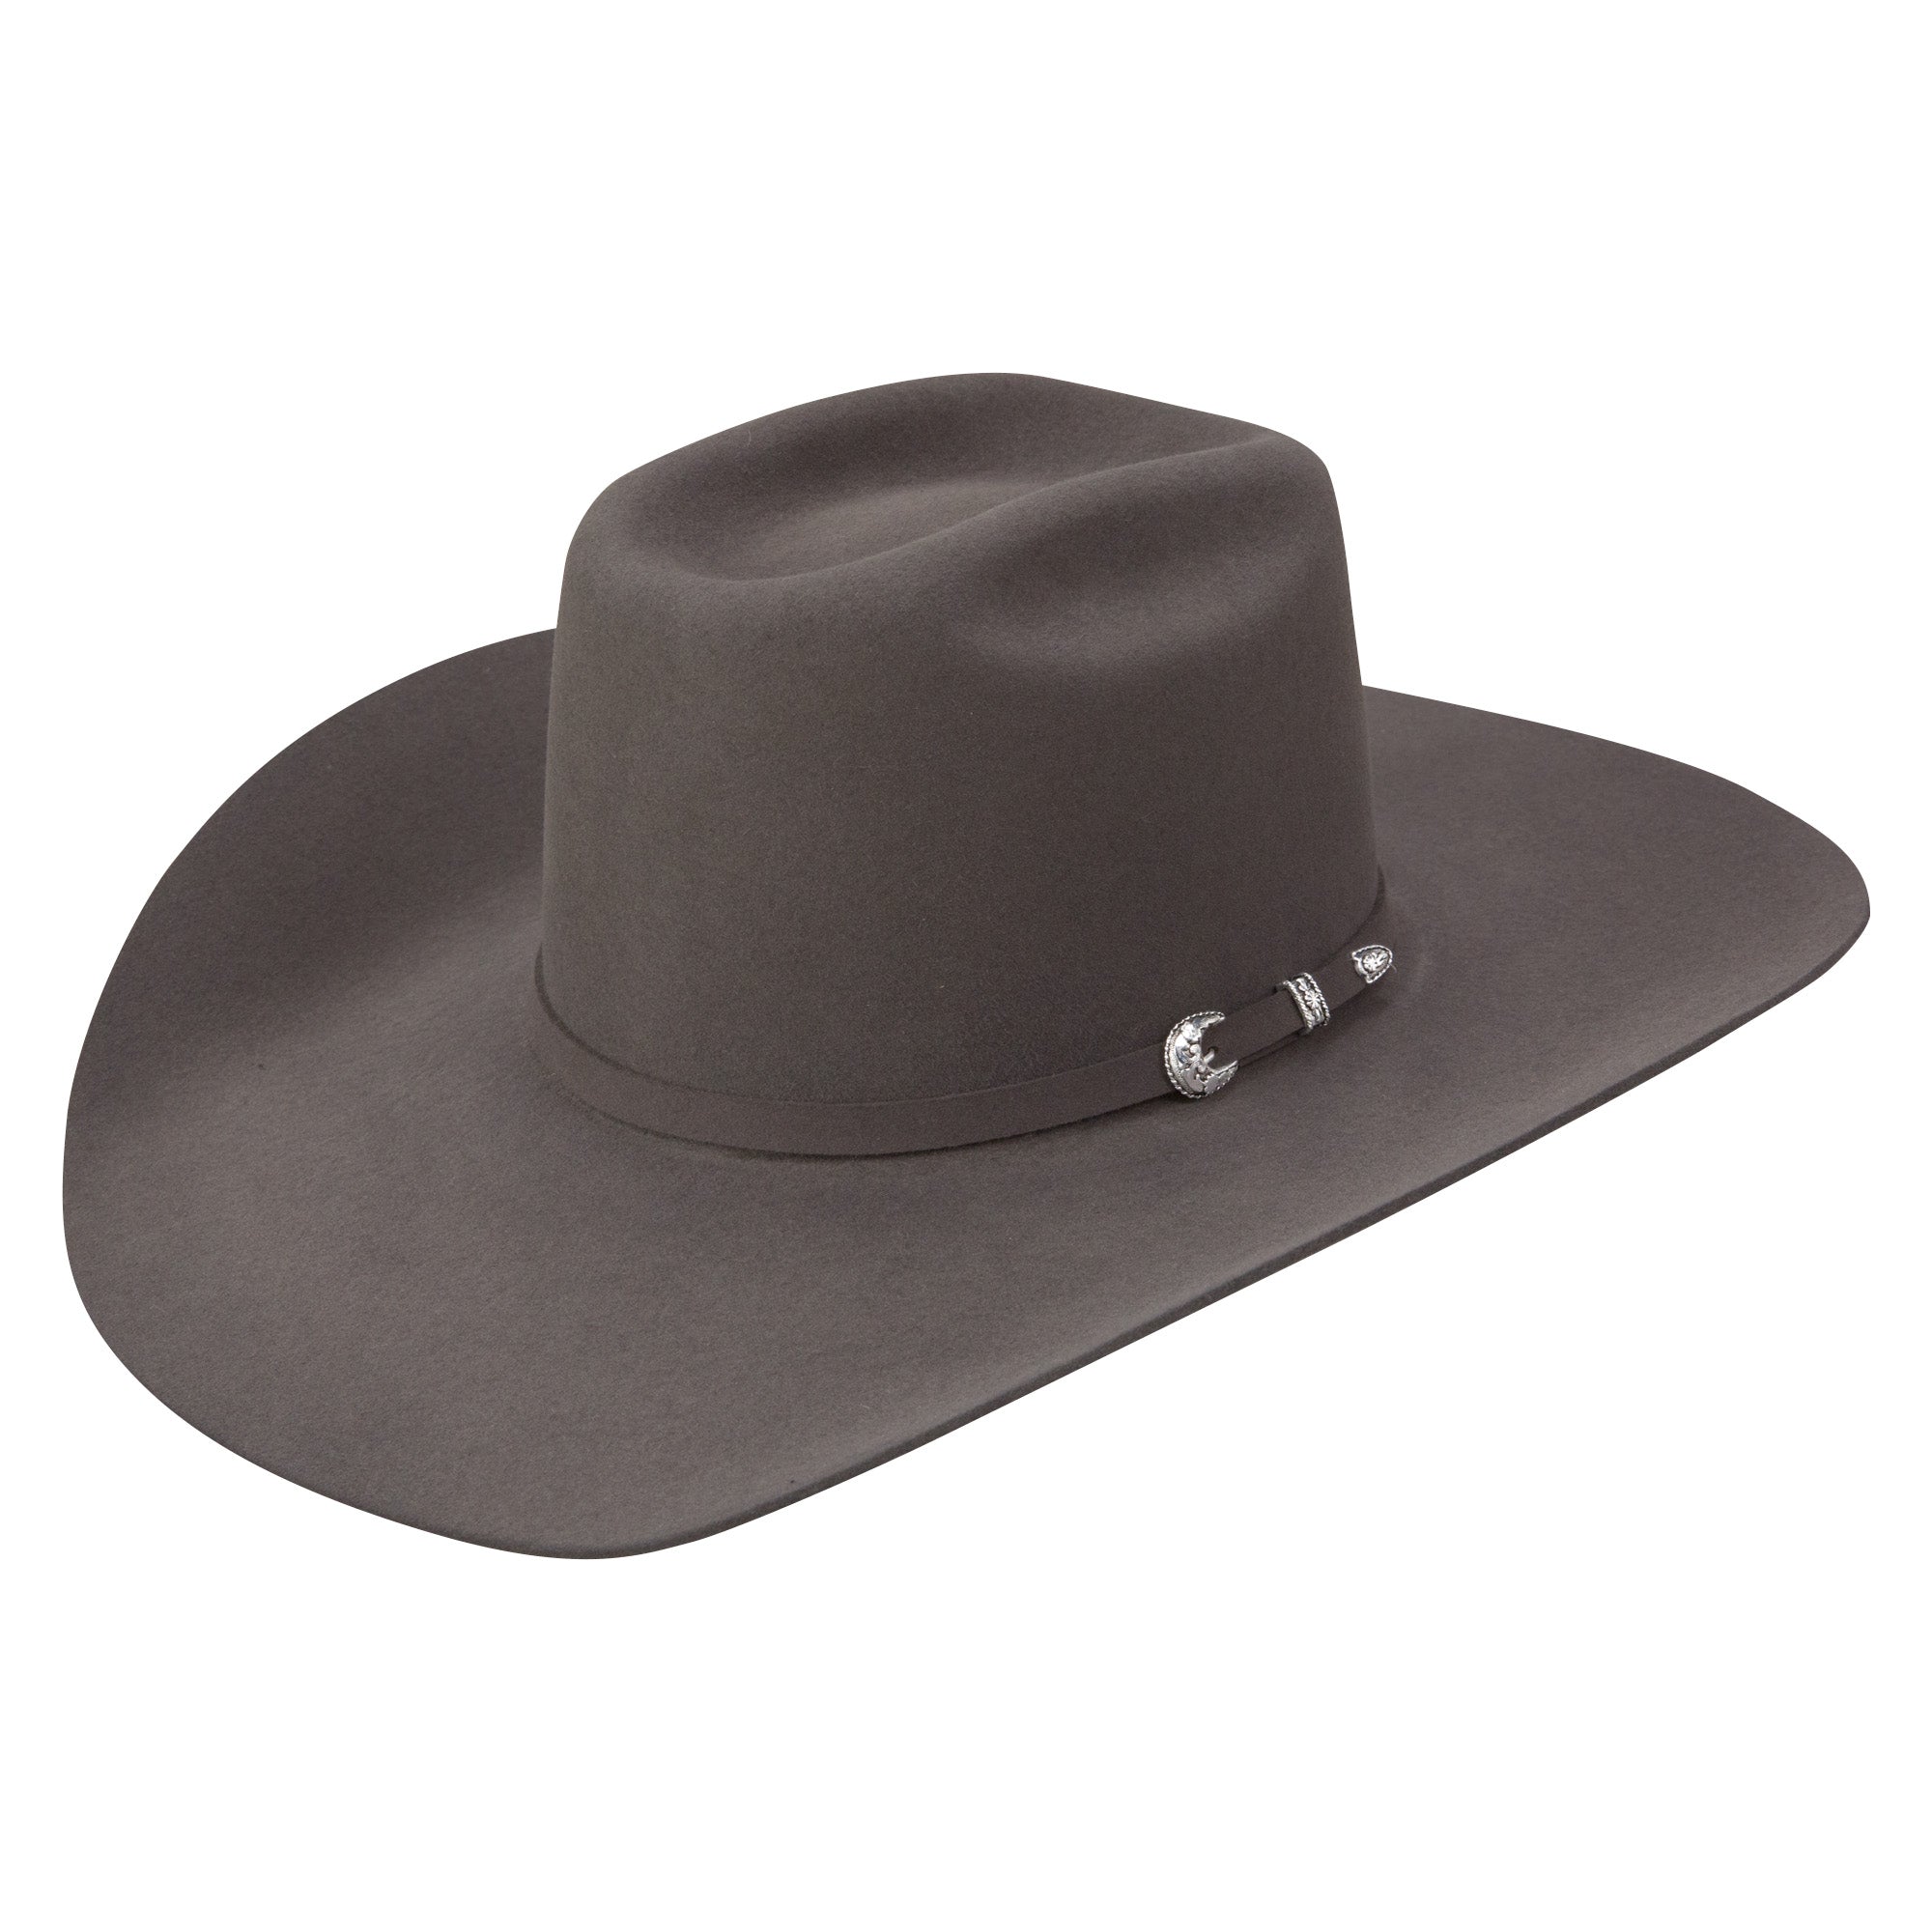 THE SP 100X Premier Cowboy Hat - Granite Hatbor